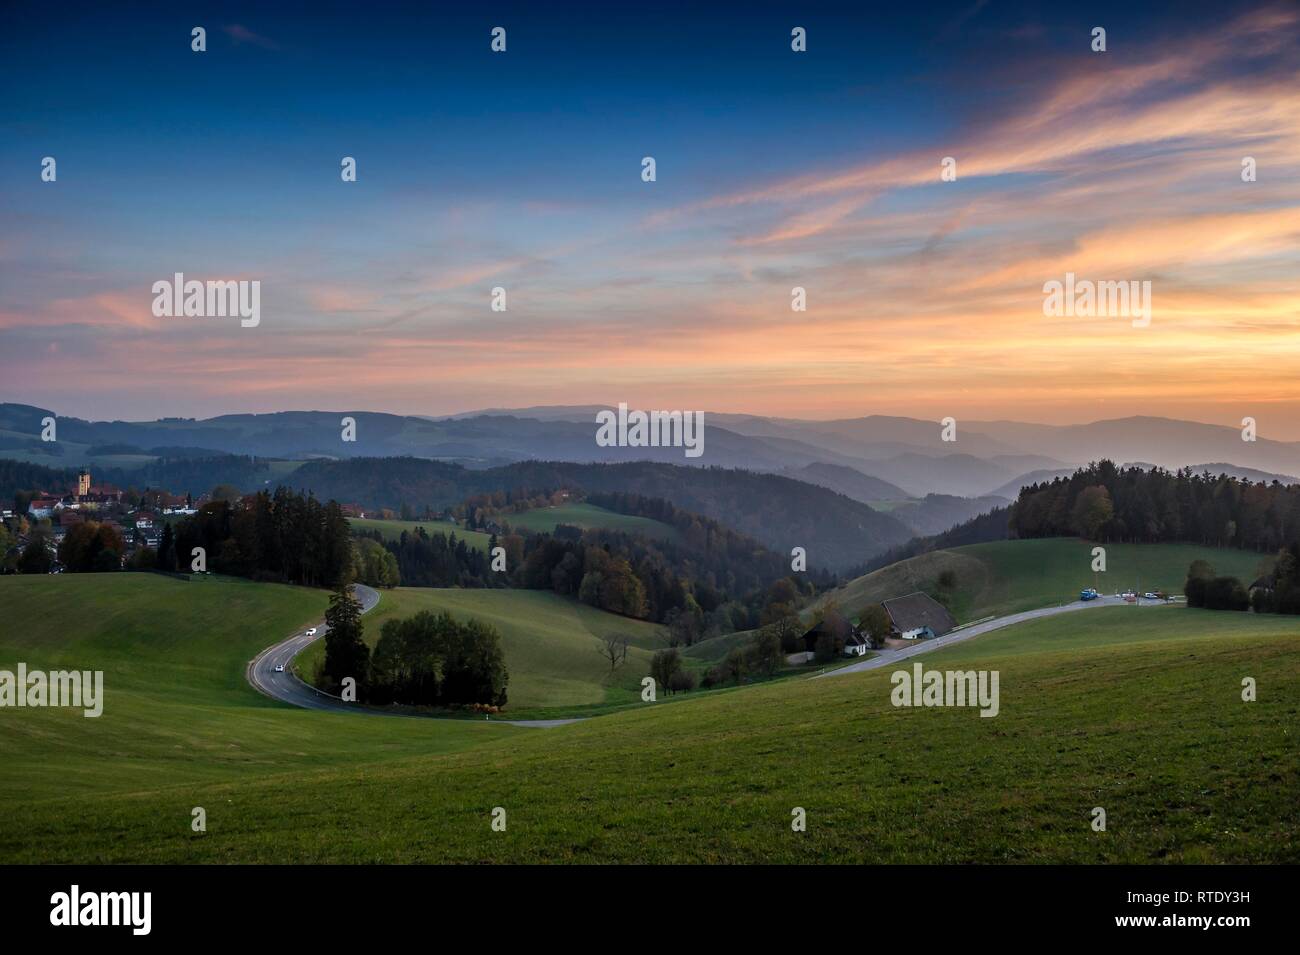 Vista del paisaje montañoso en otoño, luz del atardecer, cerca de St Märgen, Selva Negra, Baden-Württemberg, Alemania Foto de stock